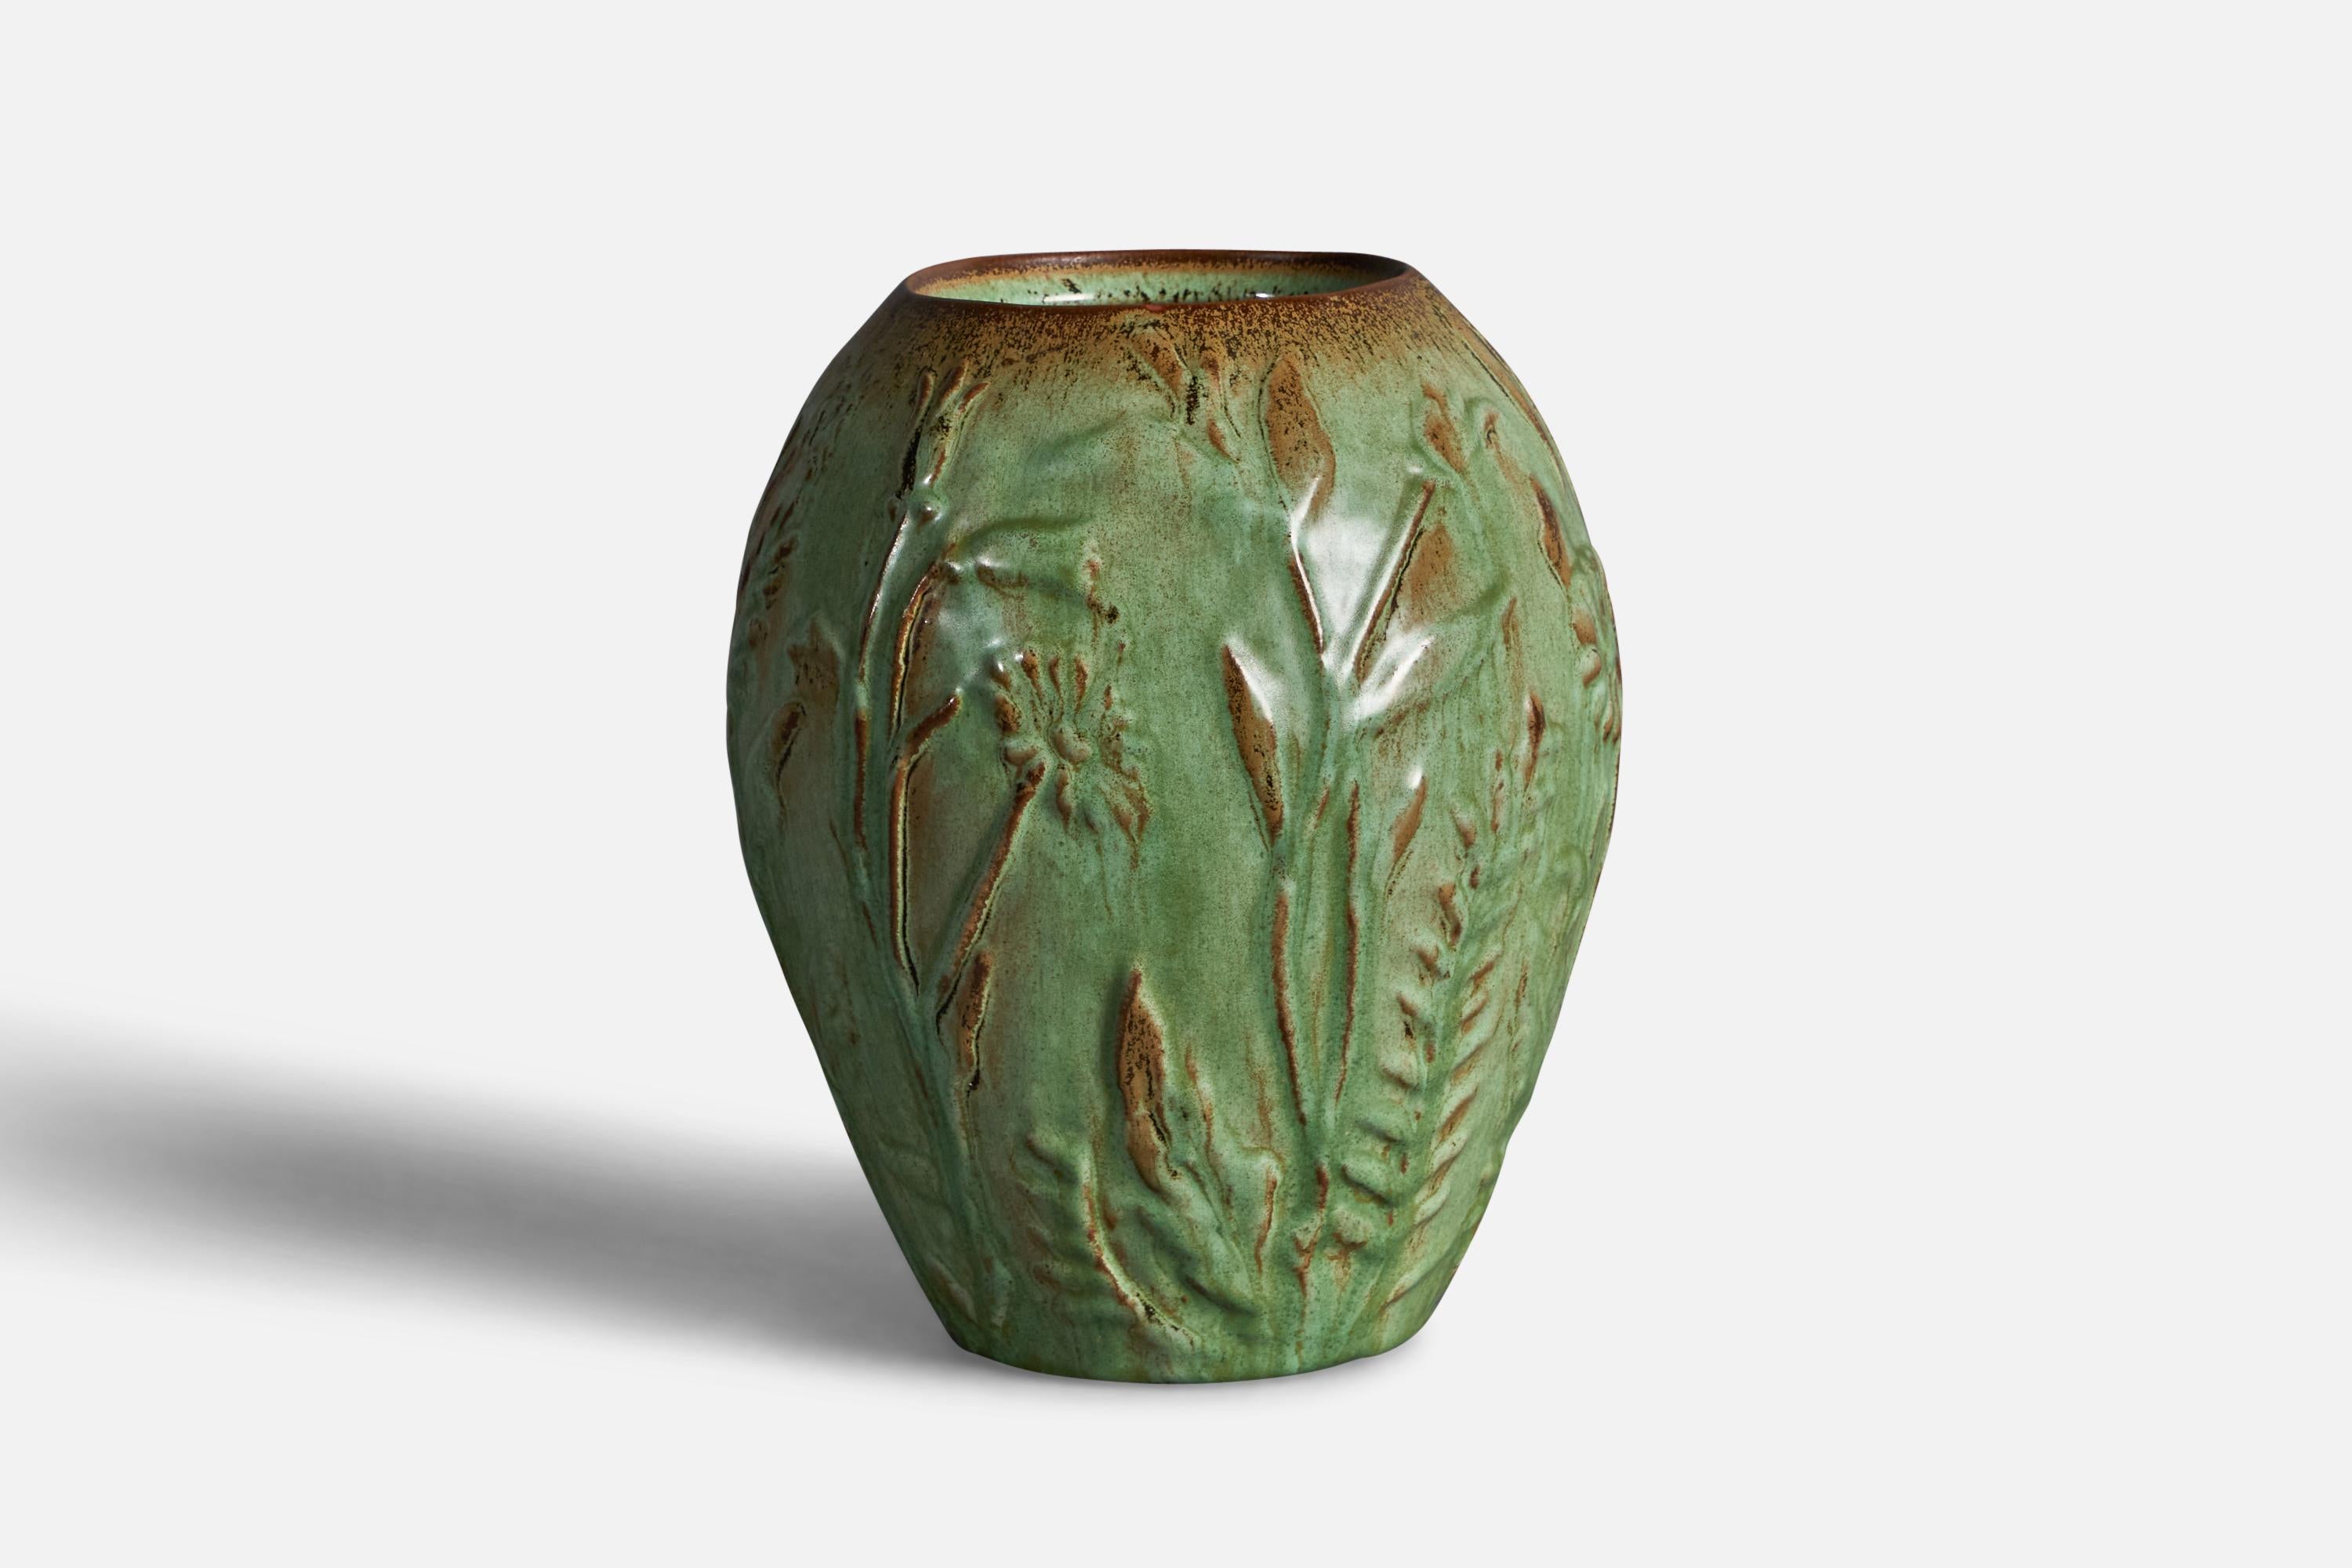 Grün und braun glasierte Vase aus Steingut, entworfen von Erik Mornils und hergestellt von Nittsjö, Schweden, um 1930.